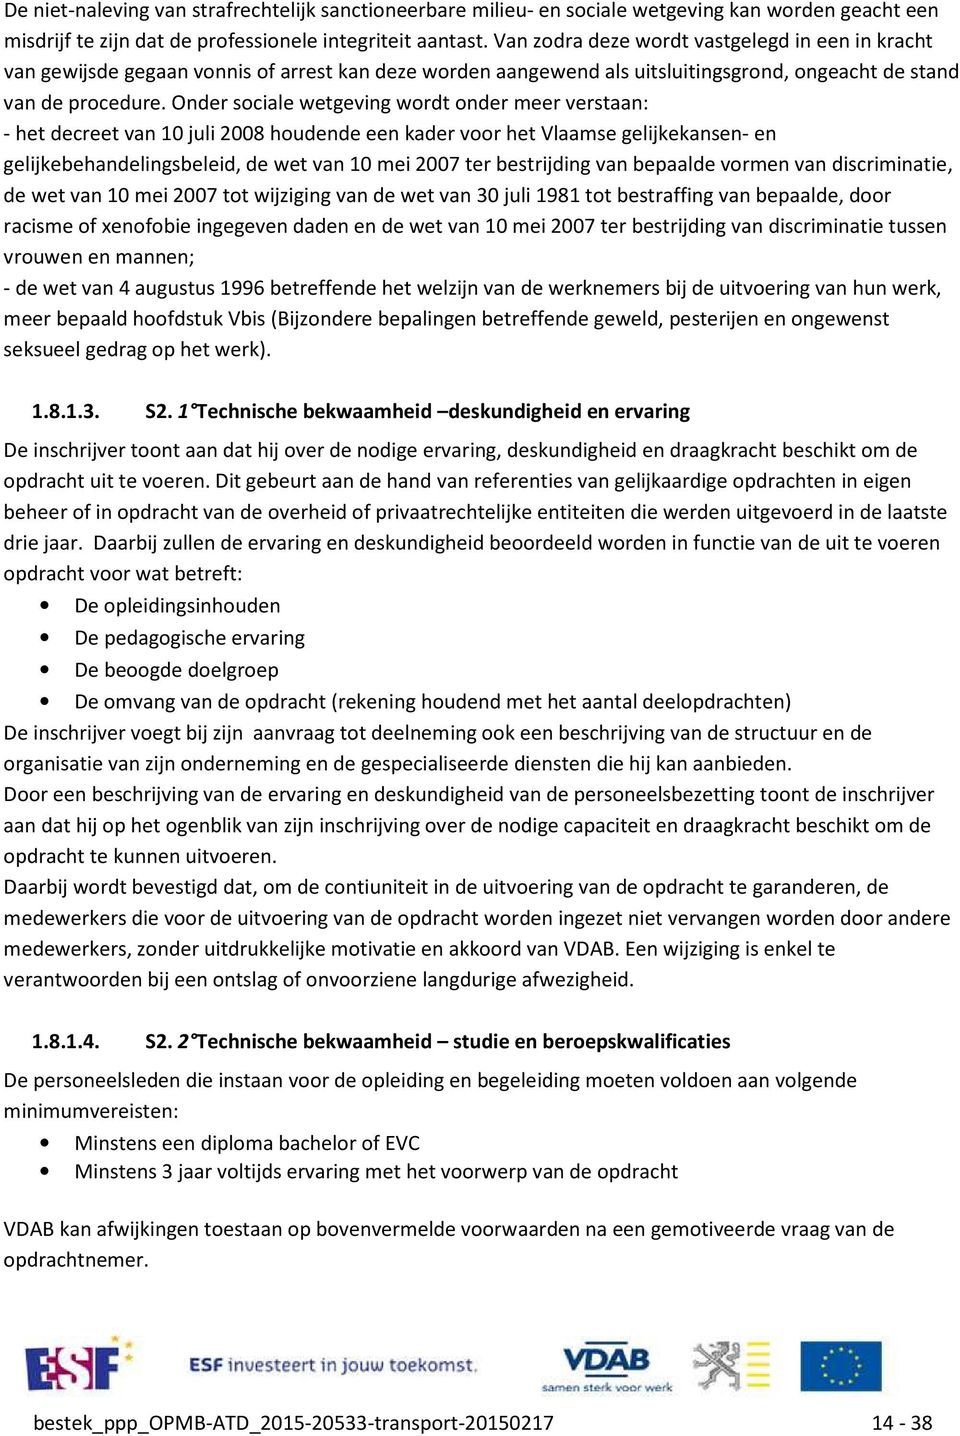 Onder sociale wetgeving wordt onder meer verstaan: - het decreet van 10 juli 2008 houdende een kader voor het Vlaamse gelijkekansen- en gelijkebehandelingsbeleid, de wet van 10 mei 2007 ter